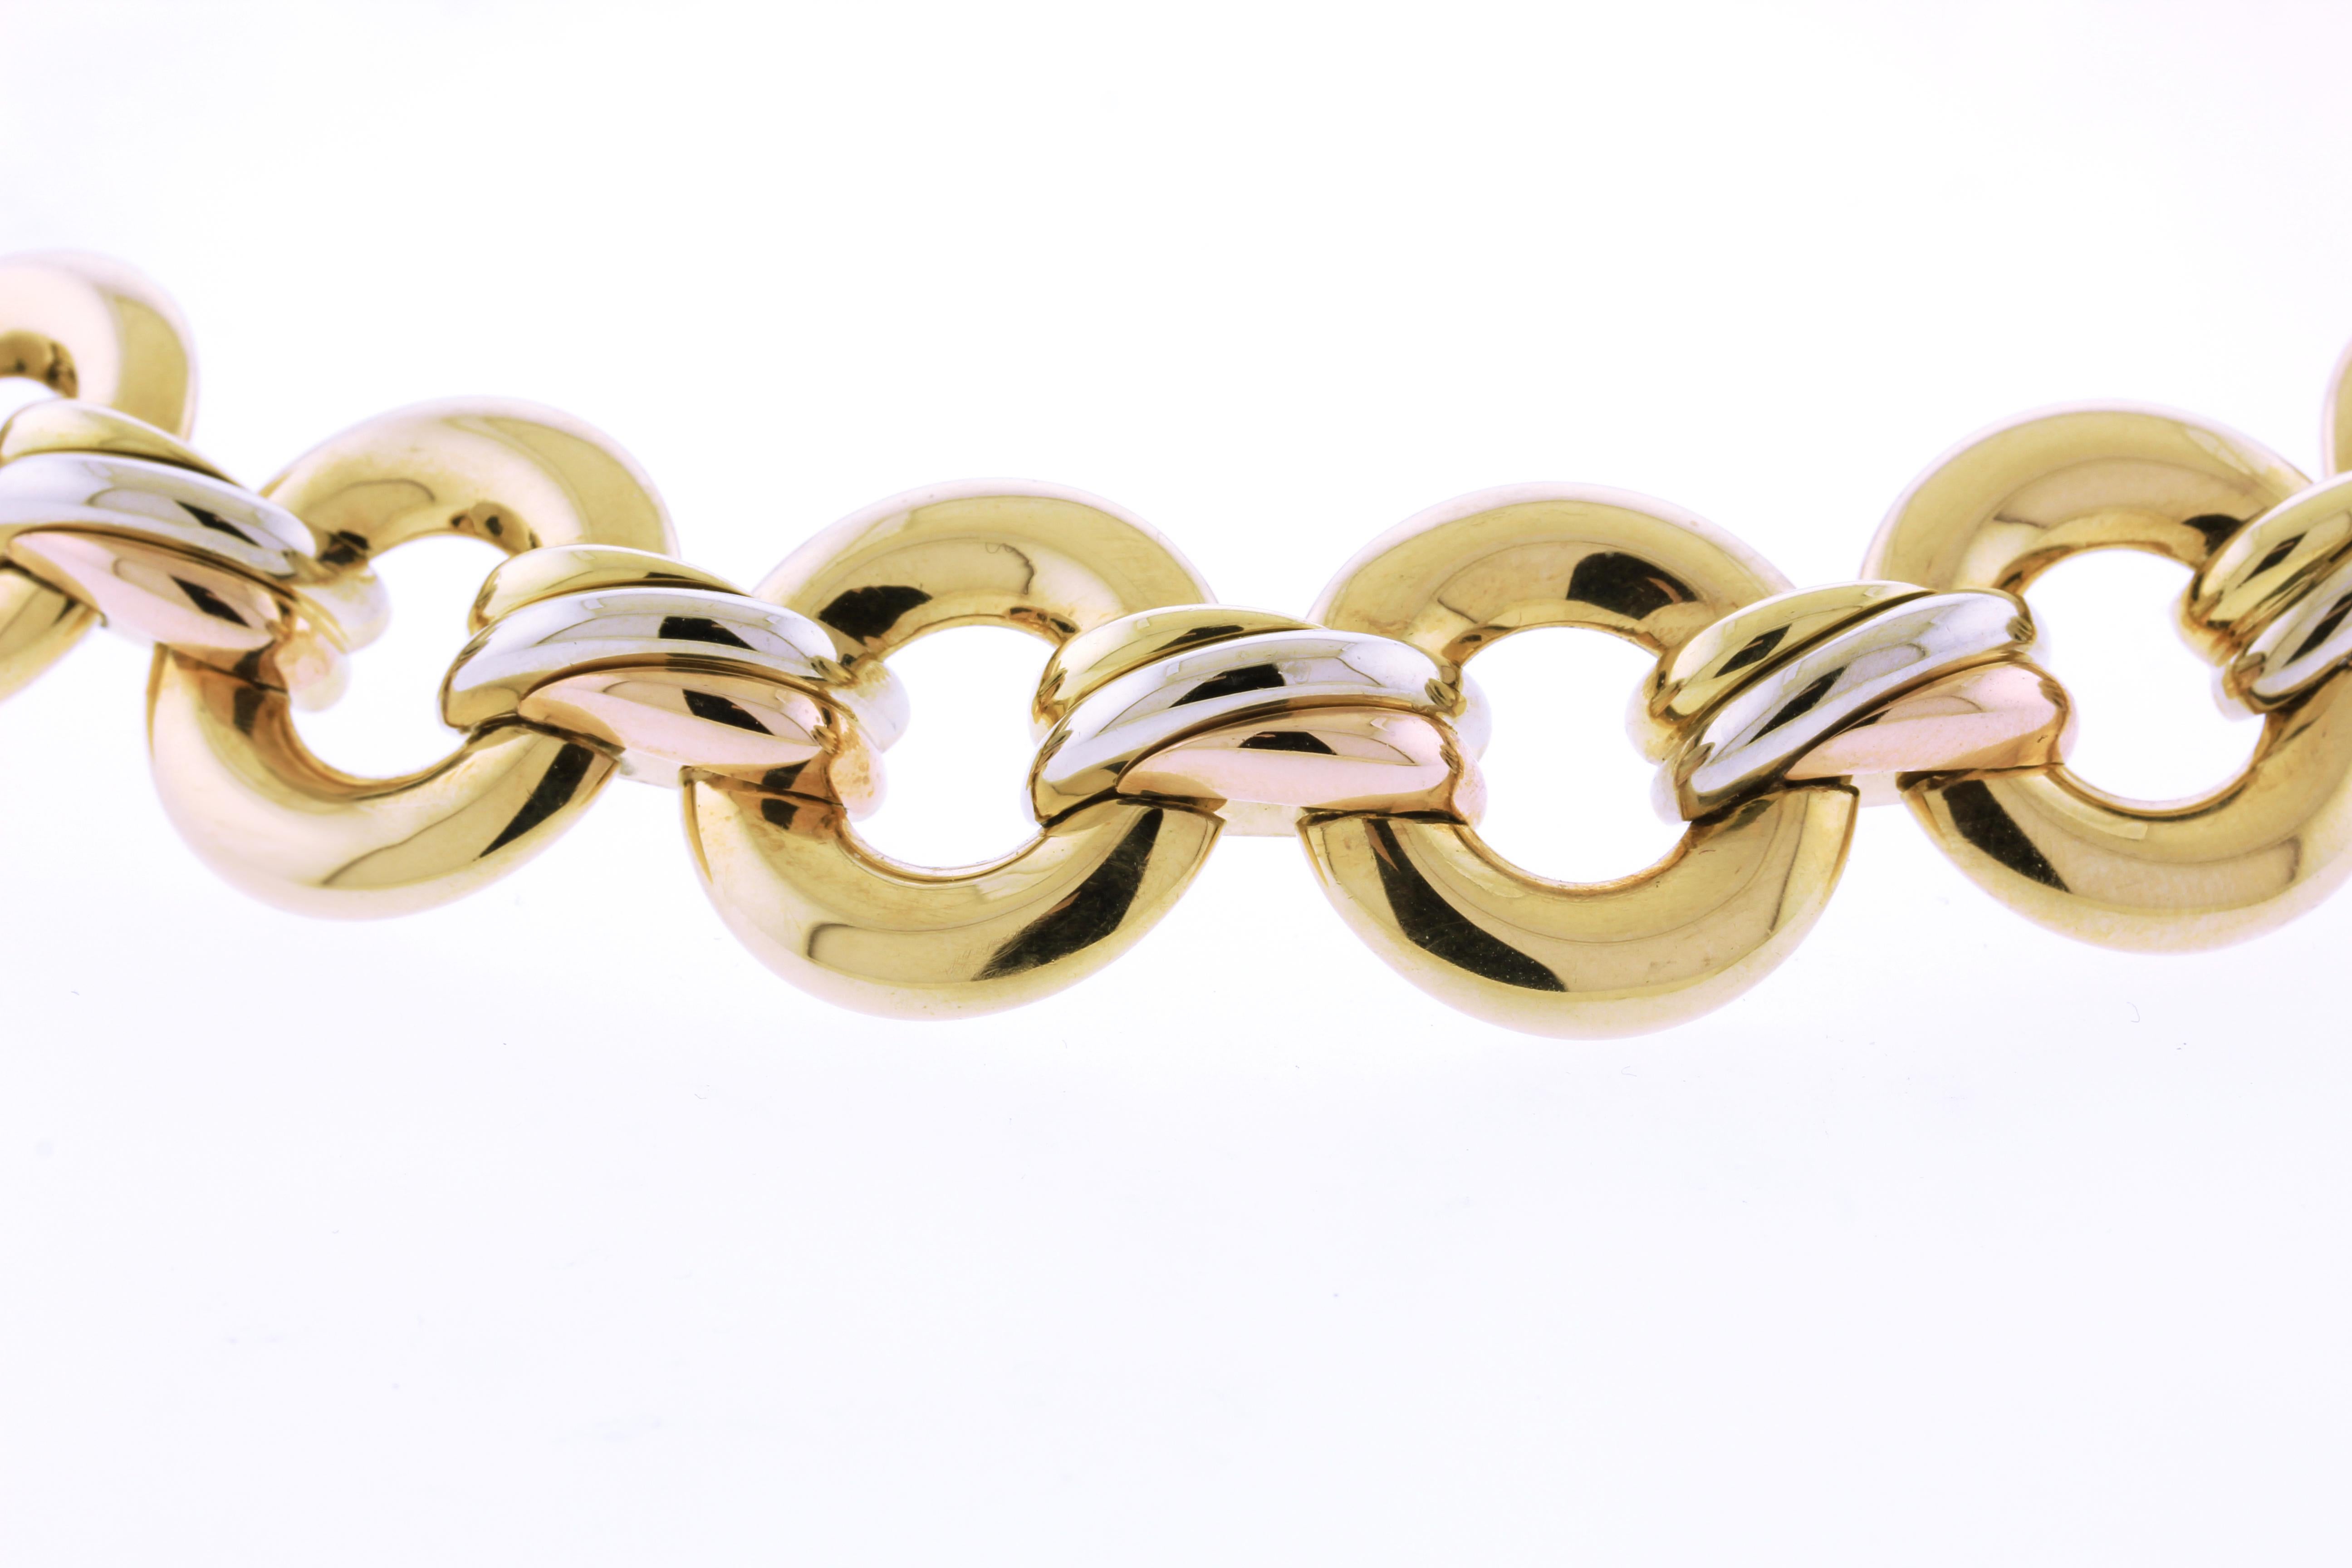 Le collier Cartier Trinity est un bijou classique et emblématique conçu par la célèbre marque française de joaillerie de luxe Cartier. La collection Trinity a été présentée pour la première fois en 1924 et se distingue par ses trois bracelets